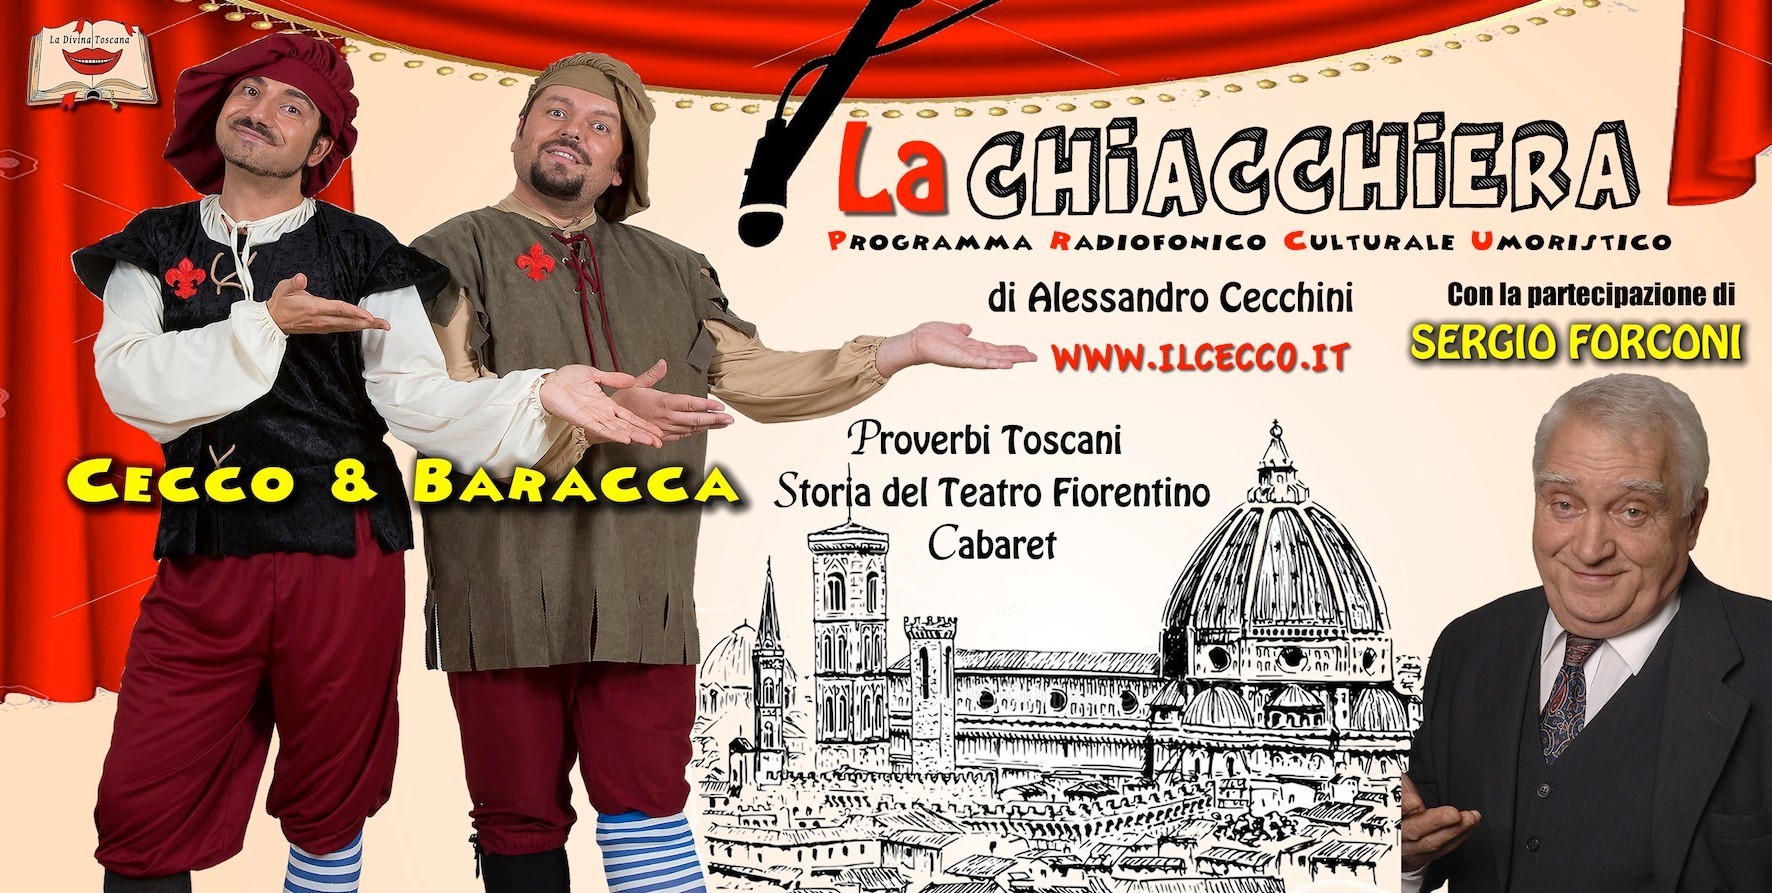 Locandina La Chiacchera programma radiofonico umoristico 